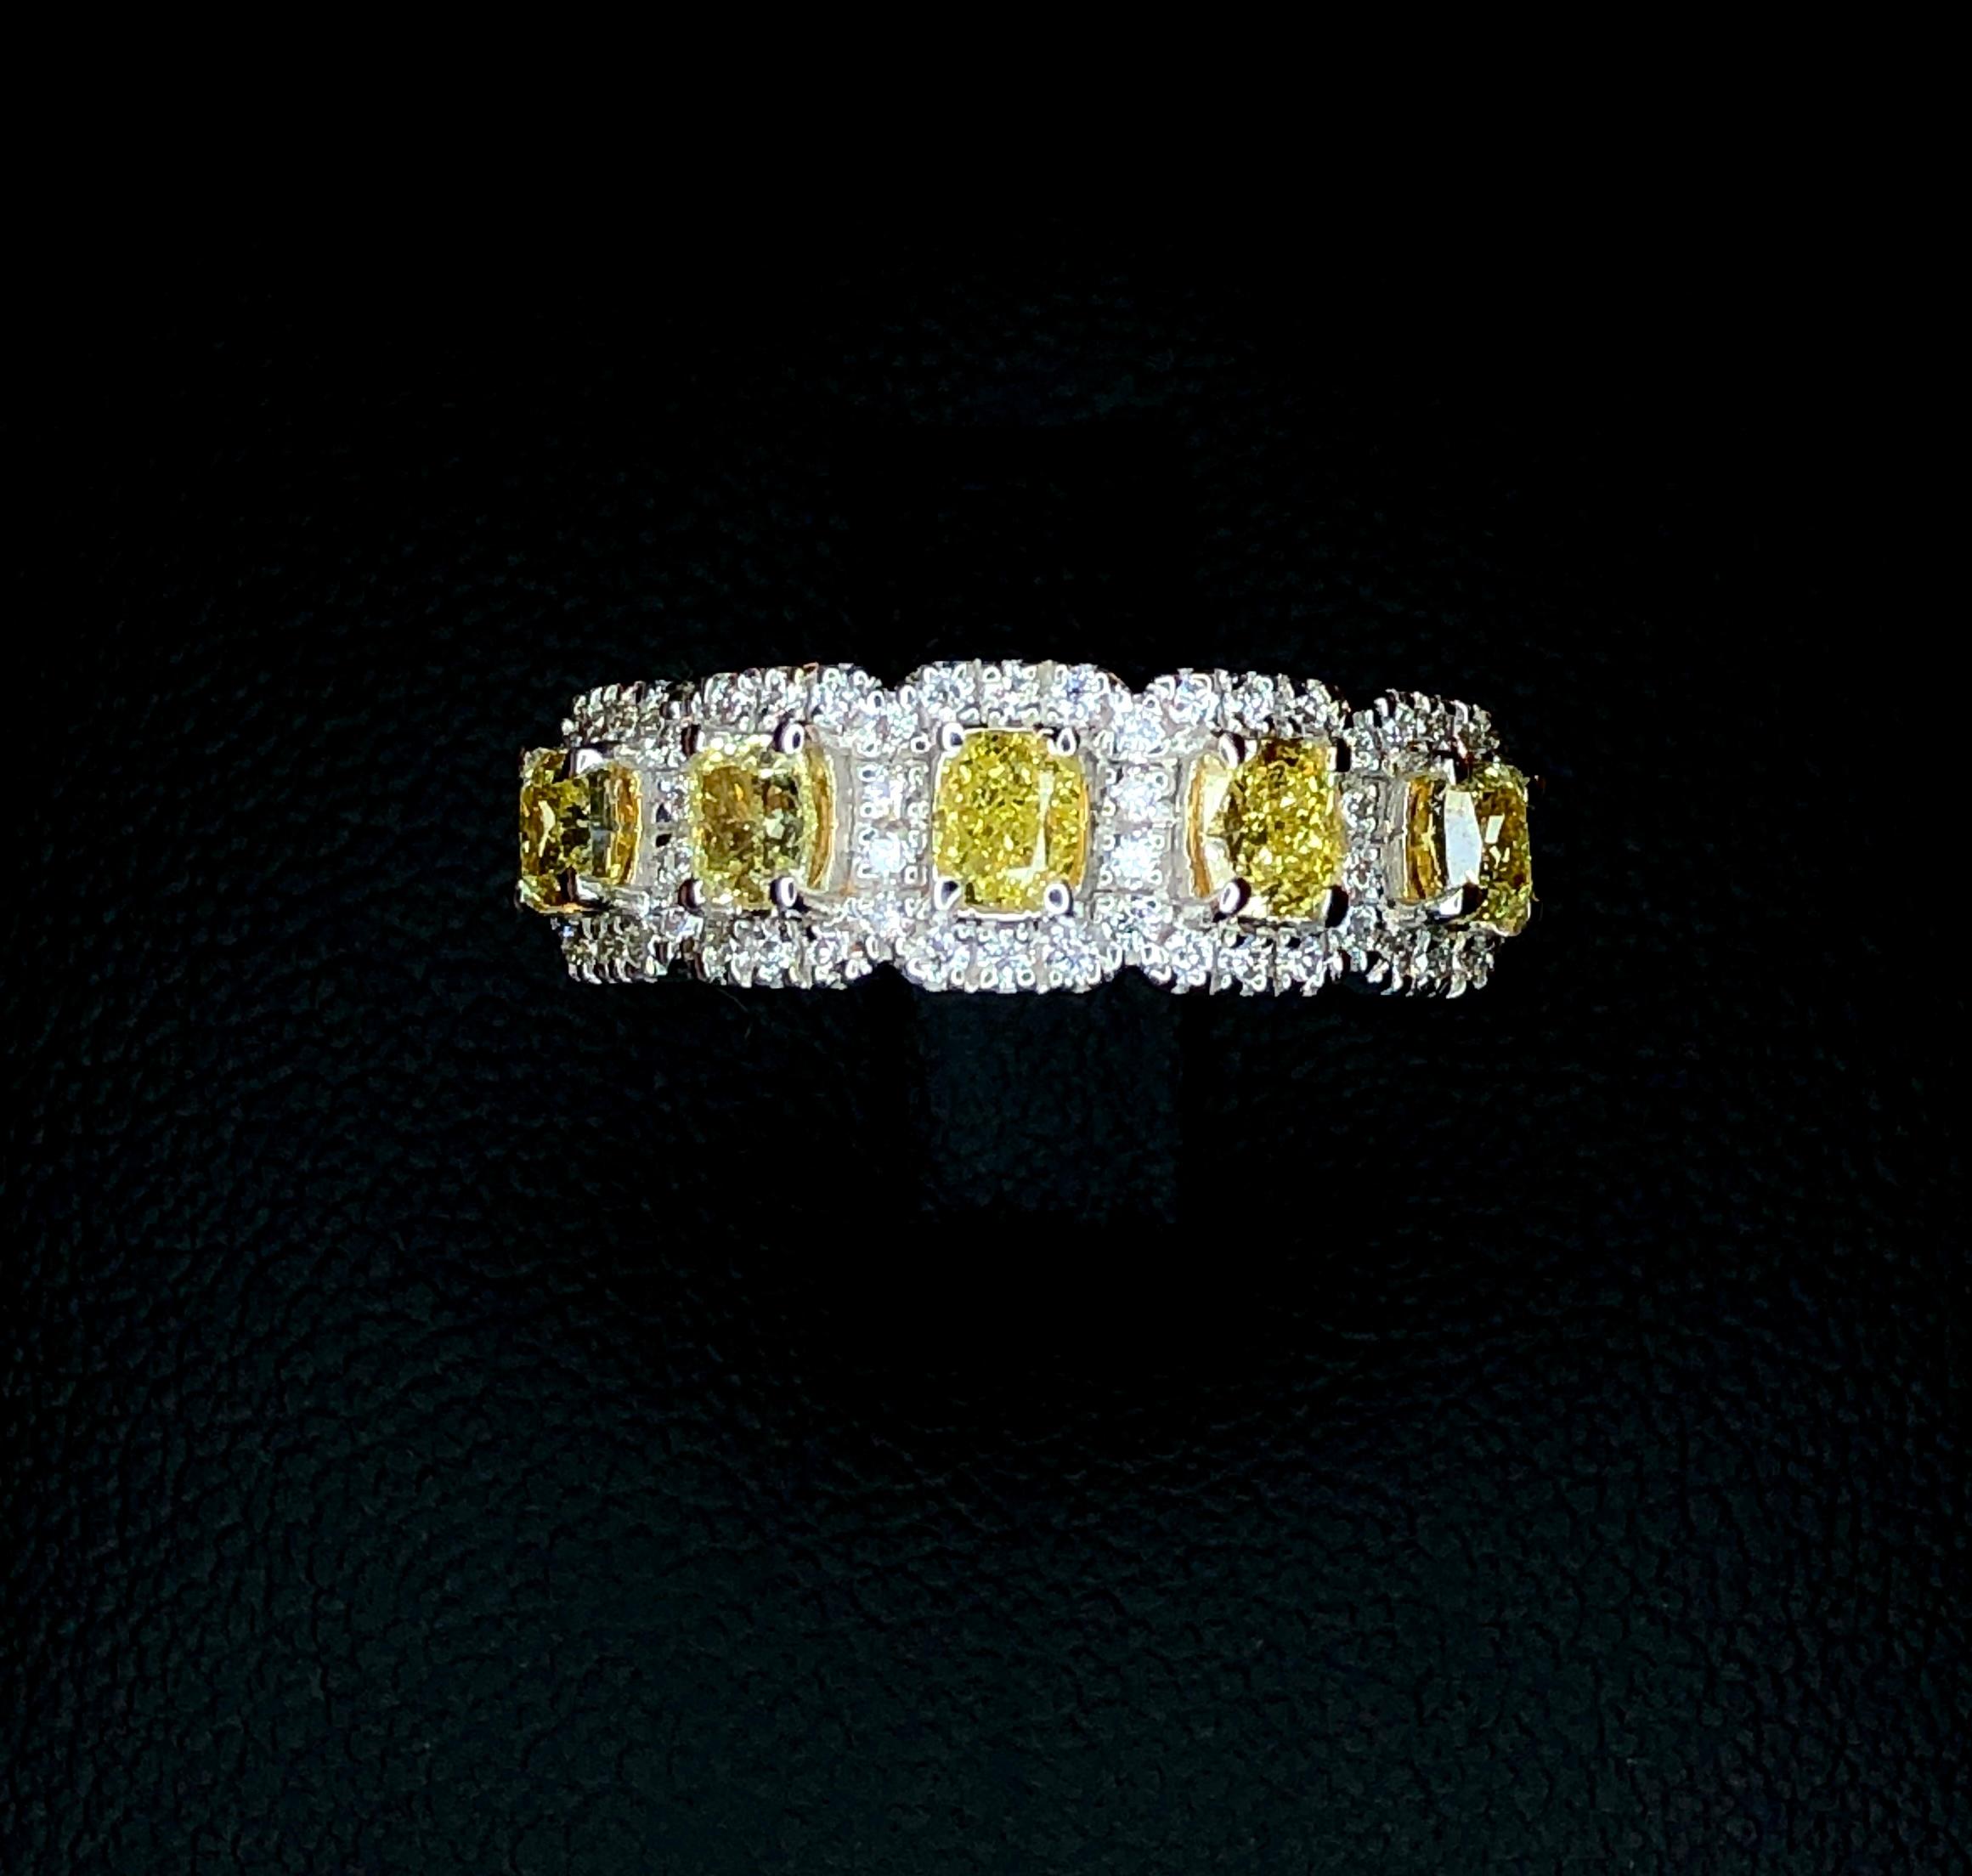 Women's Beautiful Spectacular 18K Yellow-White Diamond Ring 